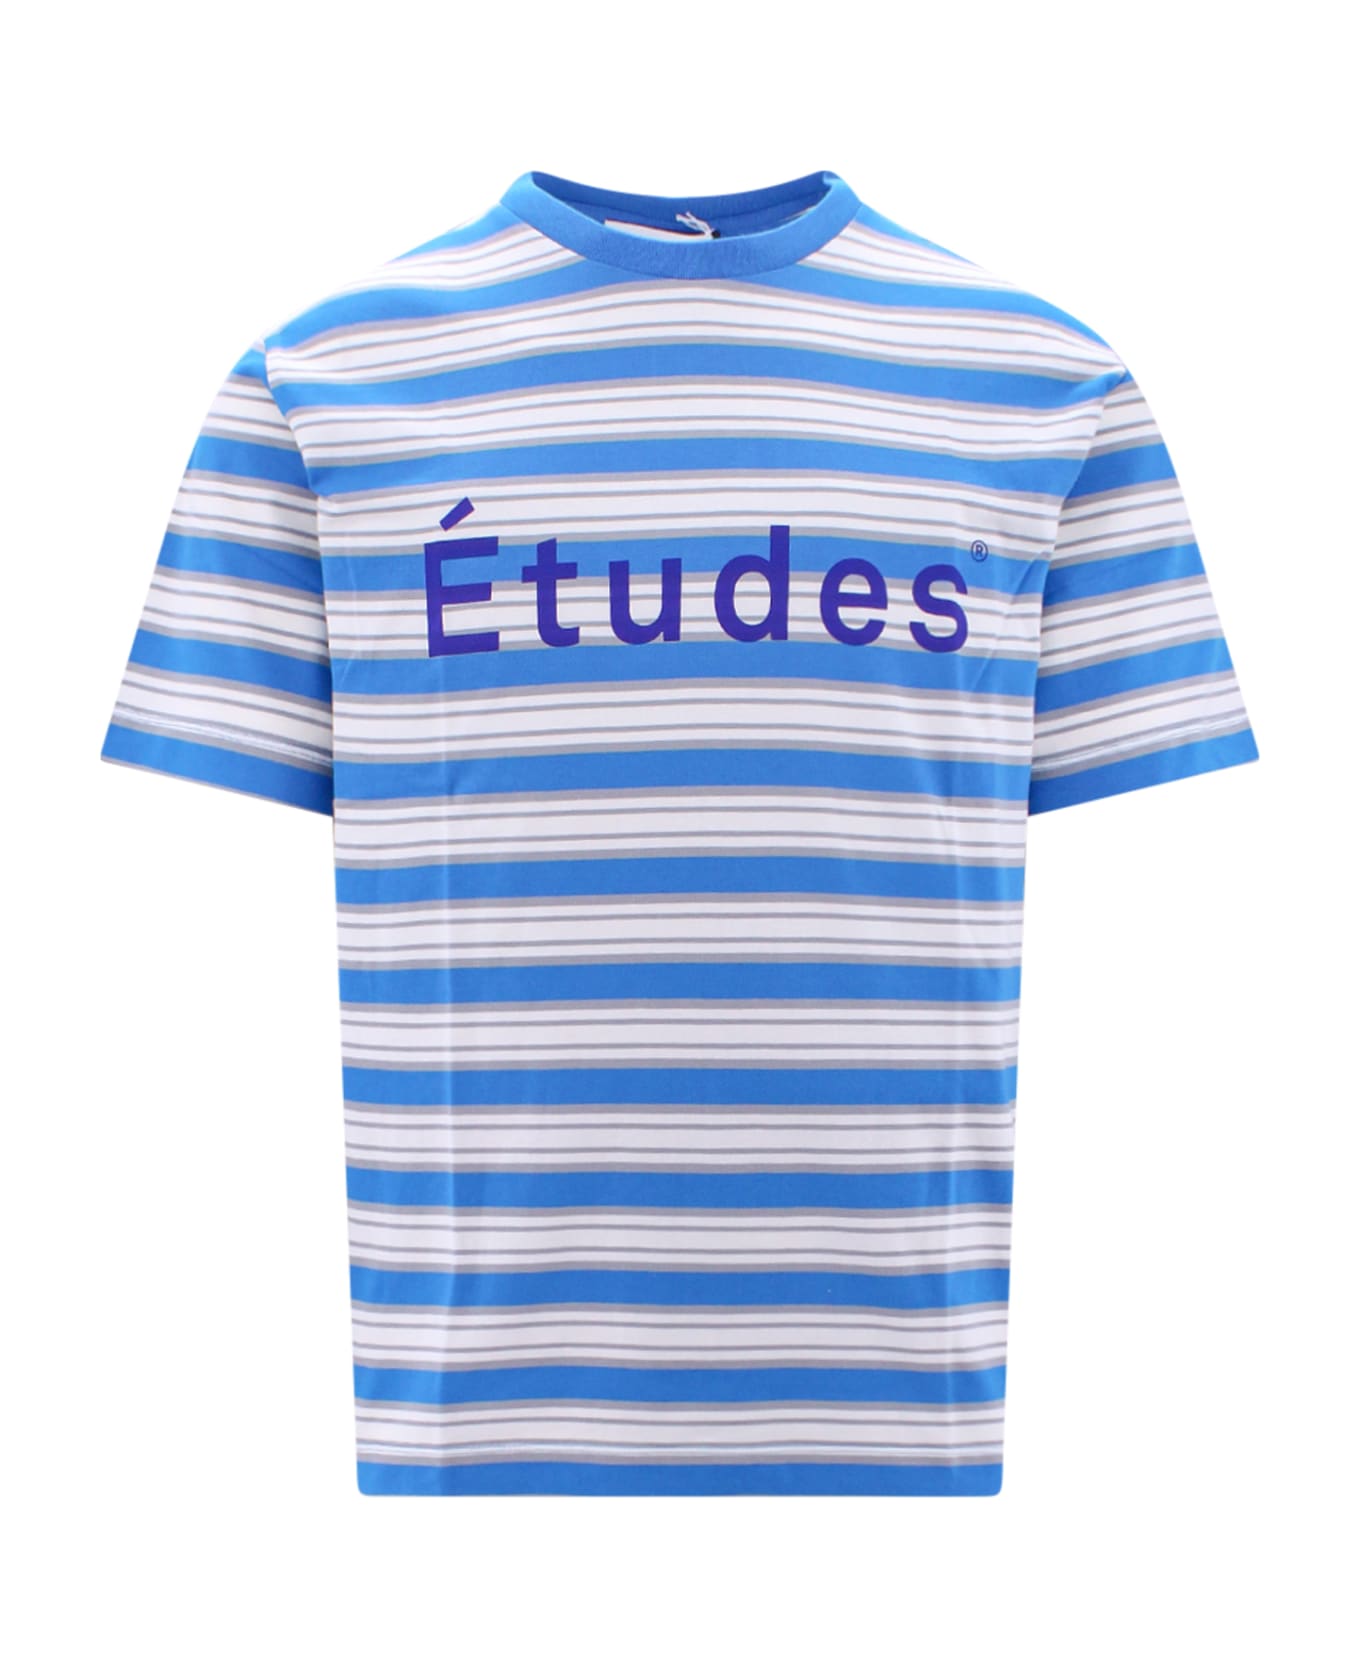 Études T-shirt - Blue